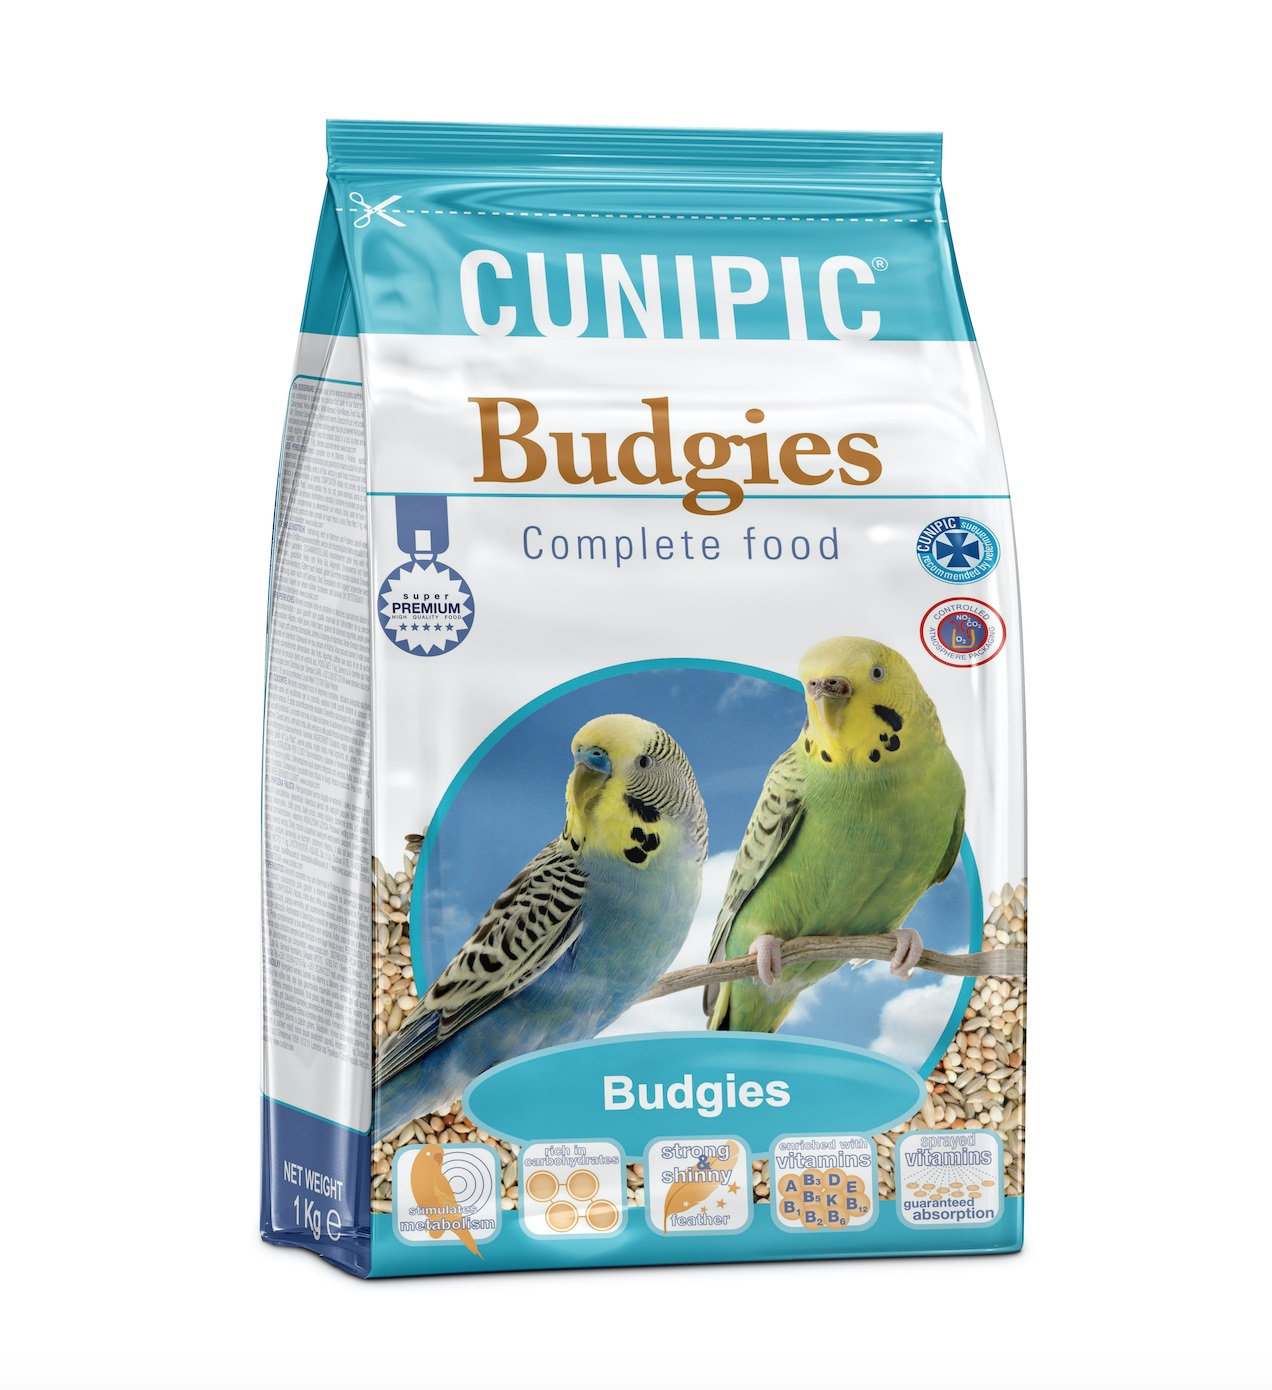 Cunipic Premium Budgies Alleinfuttermittel für Sittiche